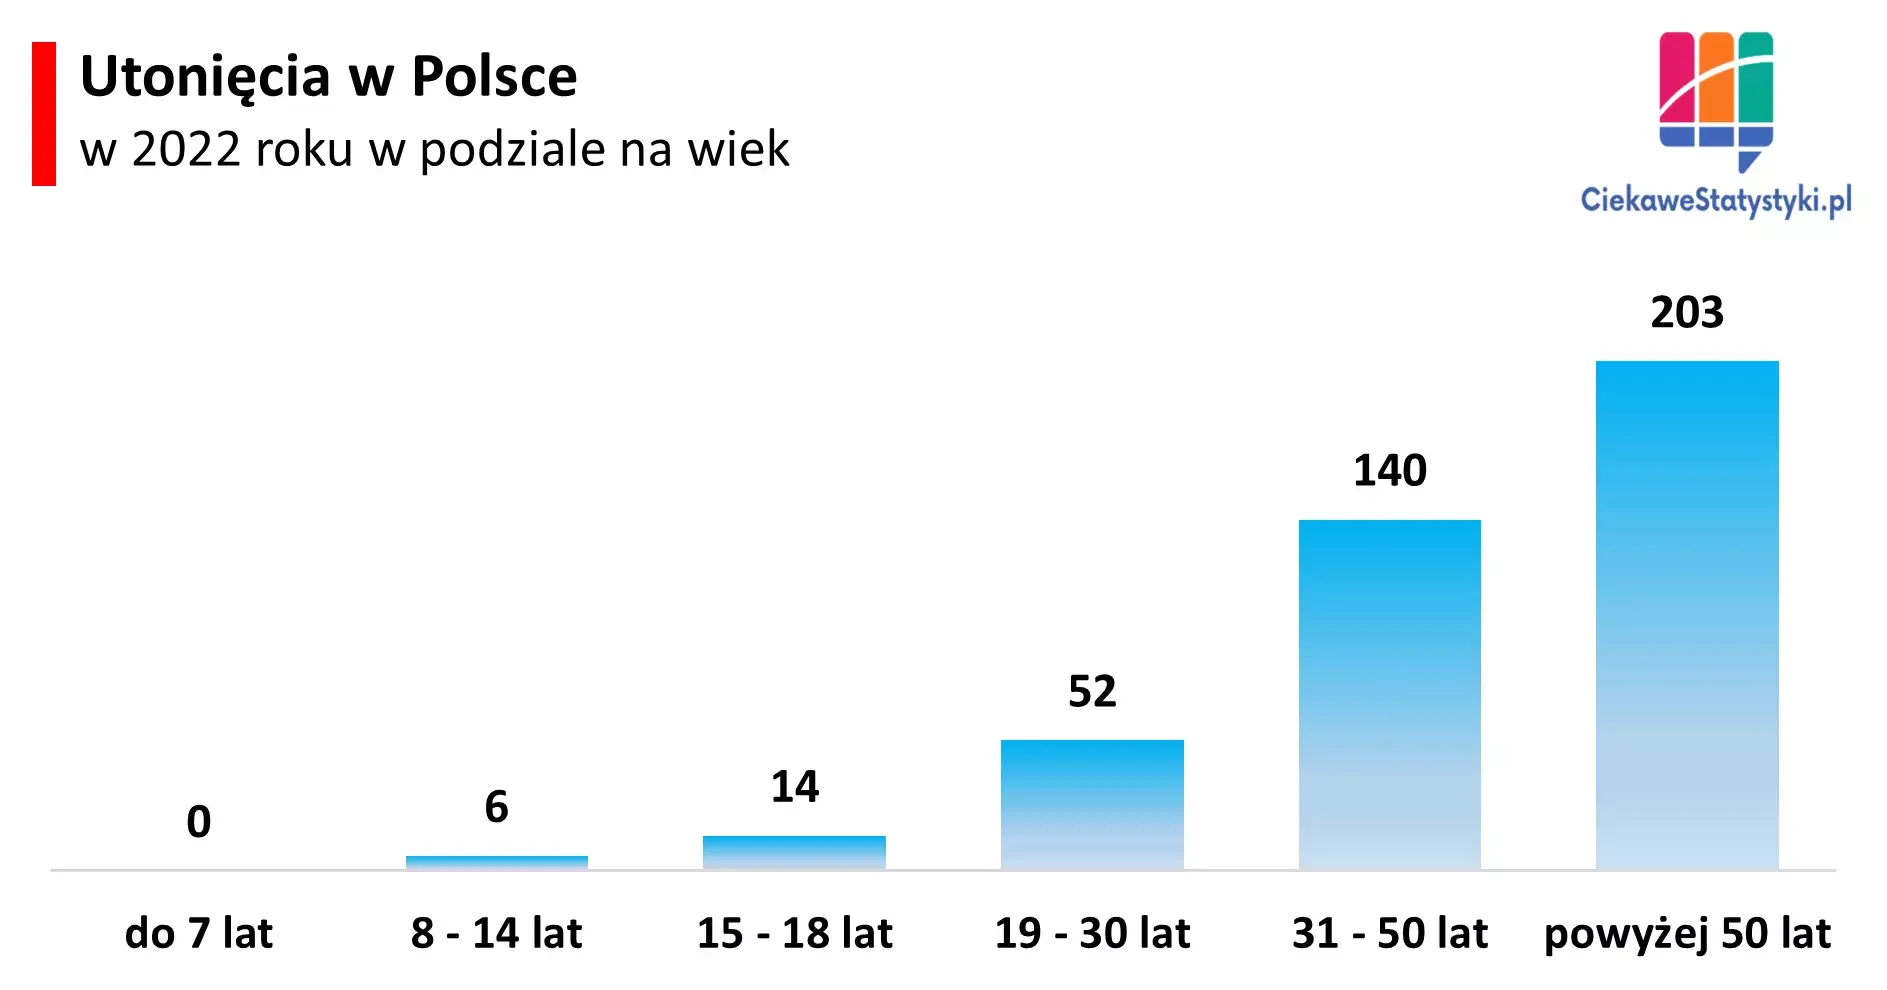 Wykres przedstawia w jakim wieku osoby utonęły w Polsce